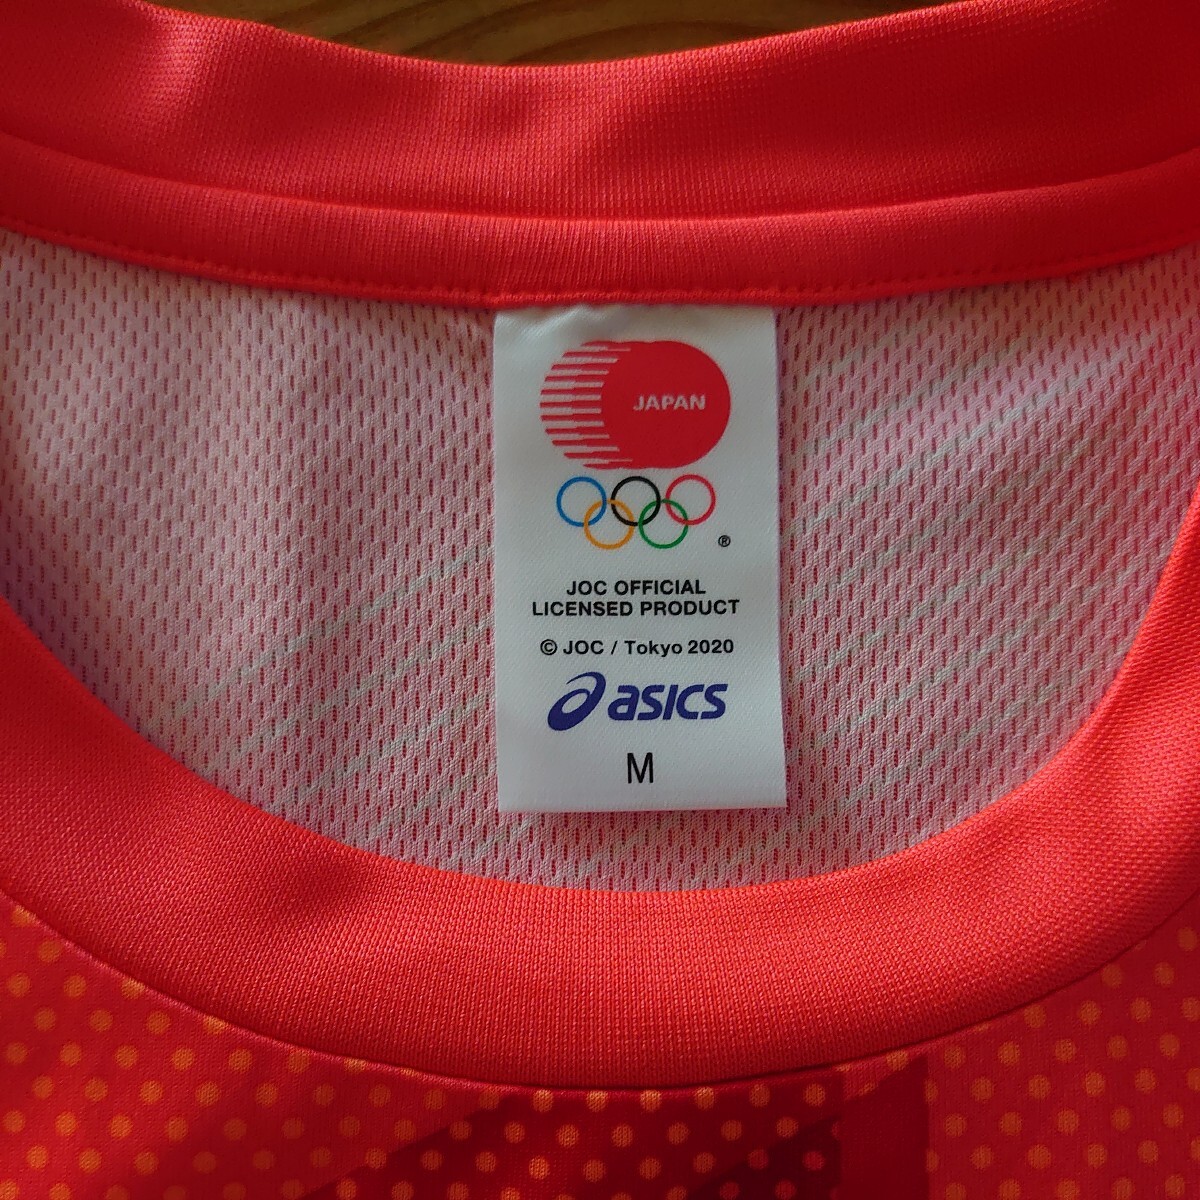 ★未使用品 asics 東京オリンピック 2020 日本代表 Tシャツ シリアルナンバー入りアシックス JAPAN OLYMPIC TEAM JOC オフィシャル M★の画像3